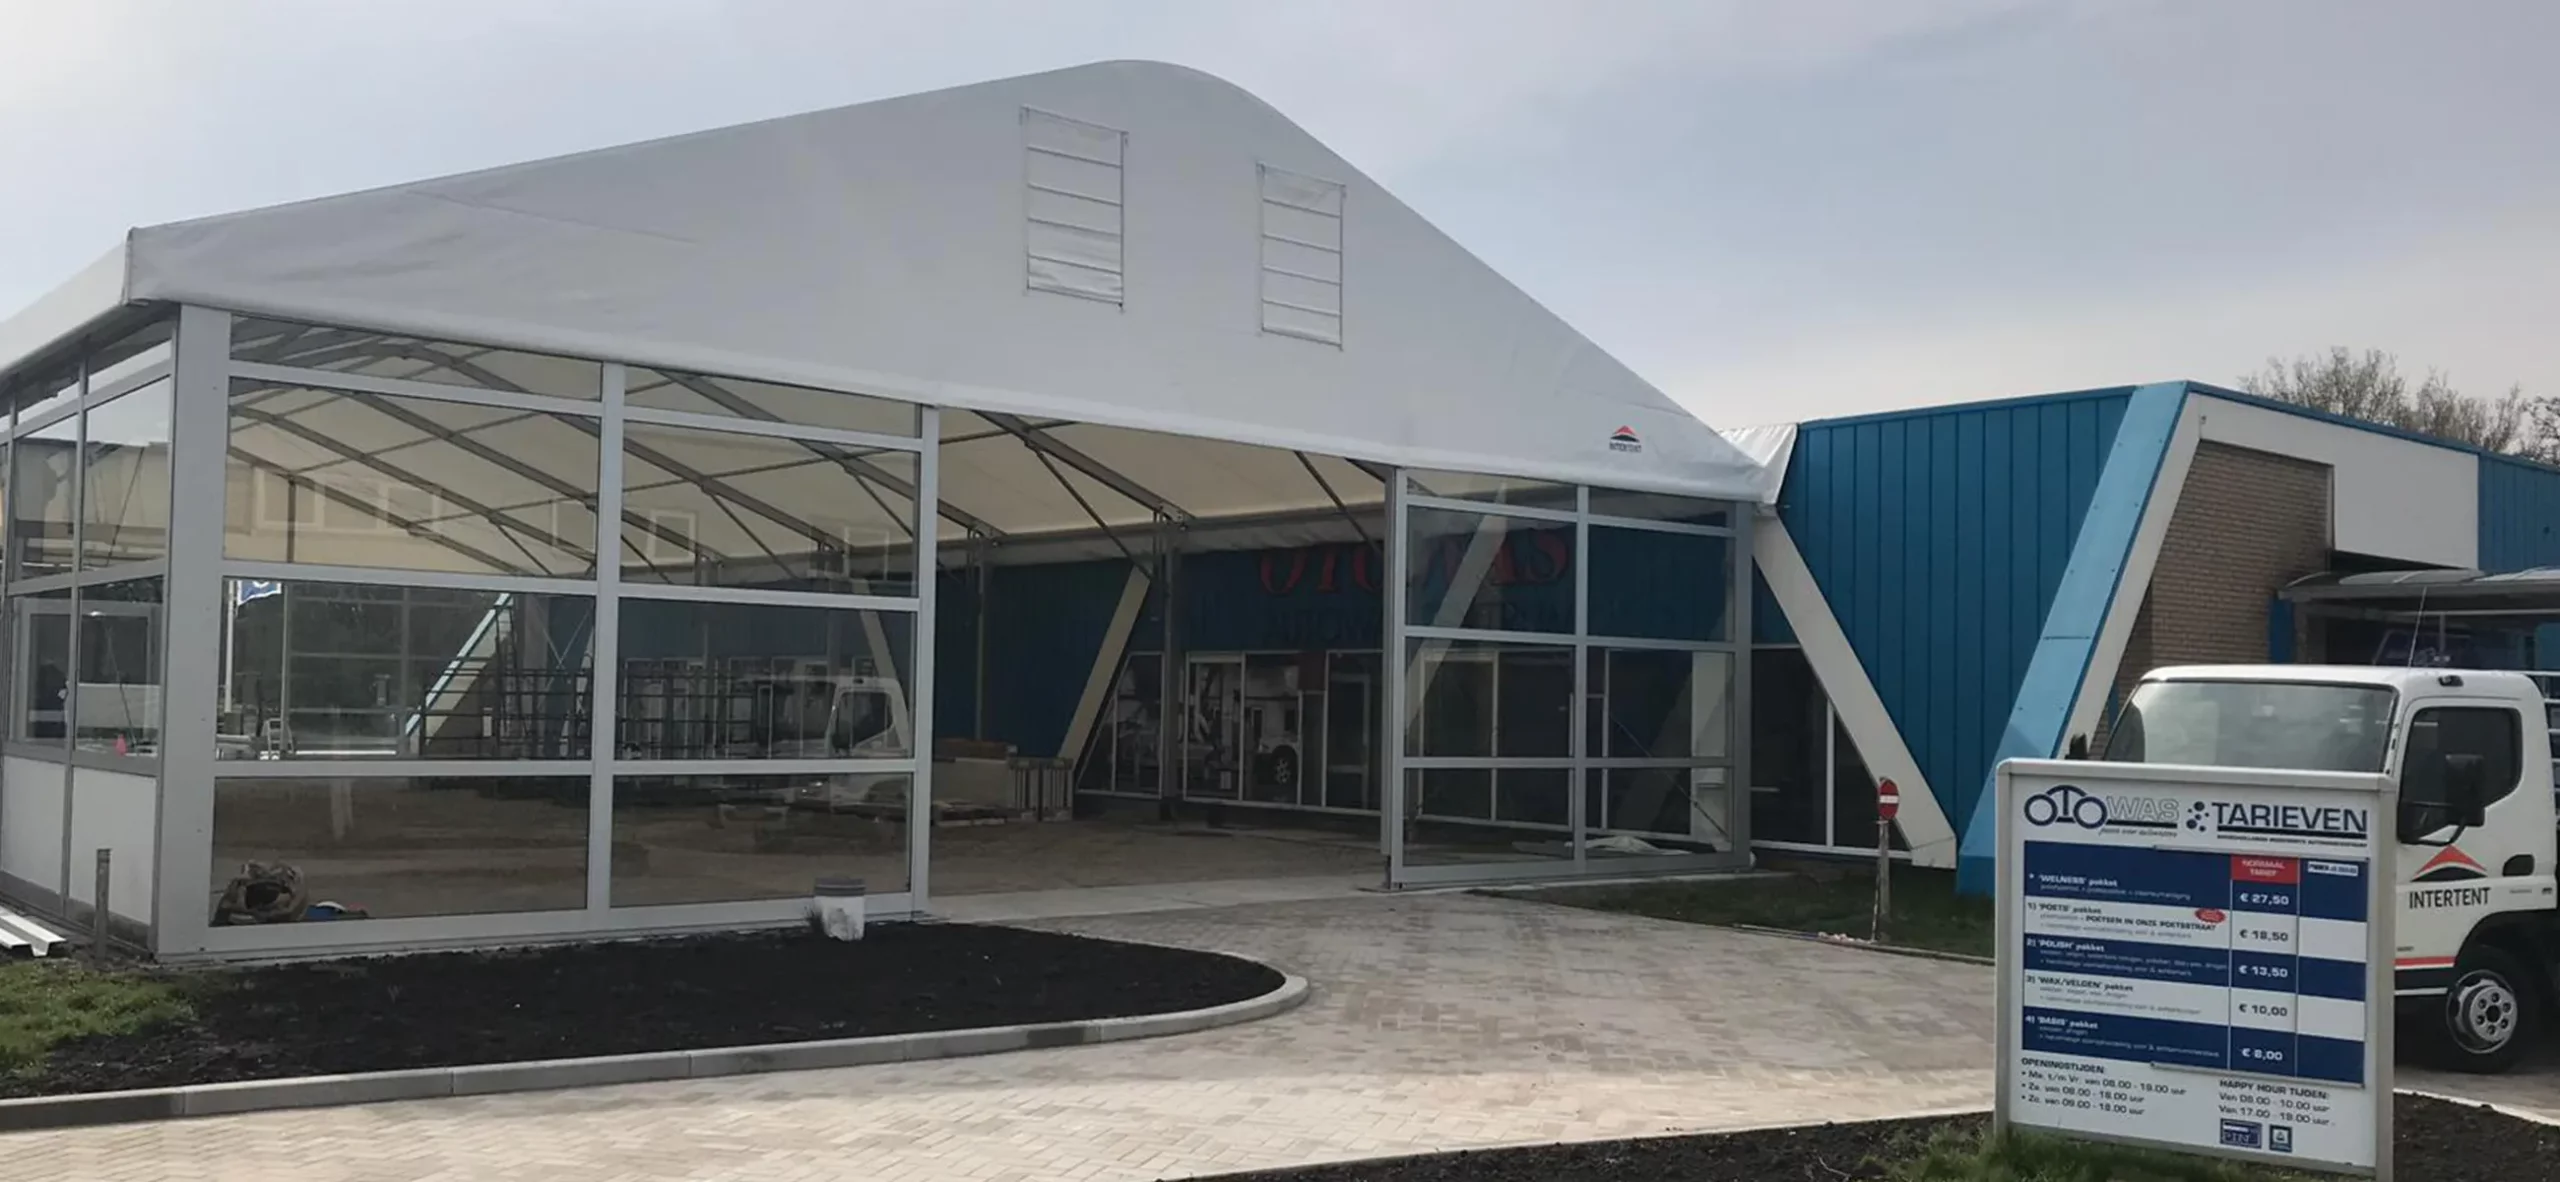 Zelthalle Alu Pavillon mit horizontalen Glaspaneelen von Zeltverleih Intersettle - Raumlösungen für Unternehmen und Geschäfte wie Autowasch Anlage